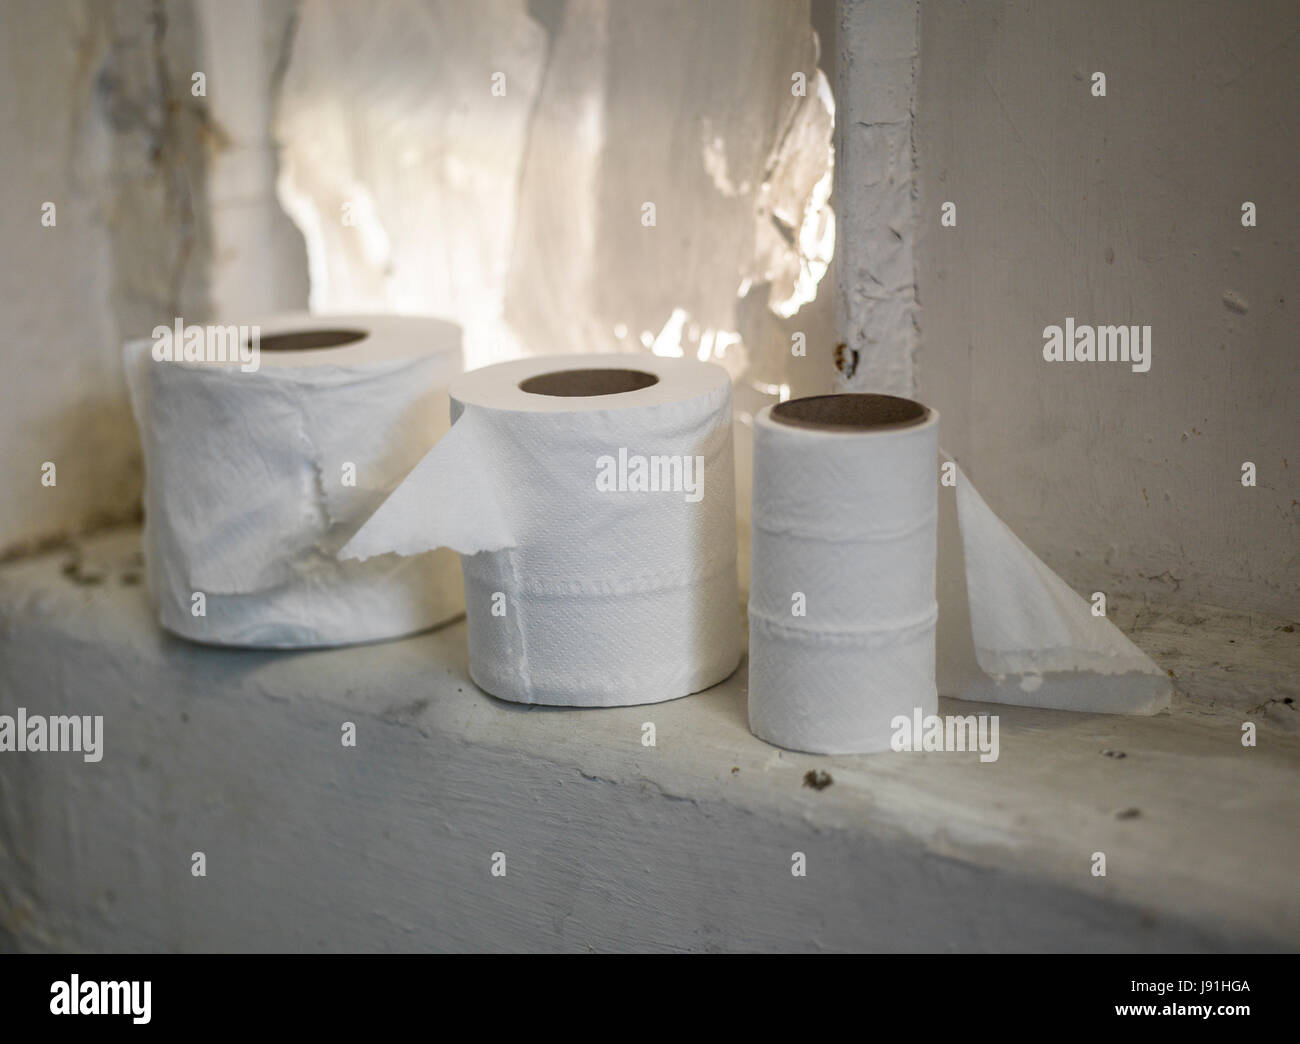 Rotoli di carta igienica nel bagno disordinati Foto Stock